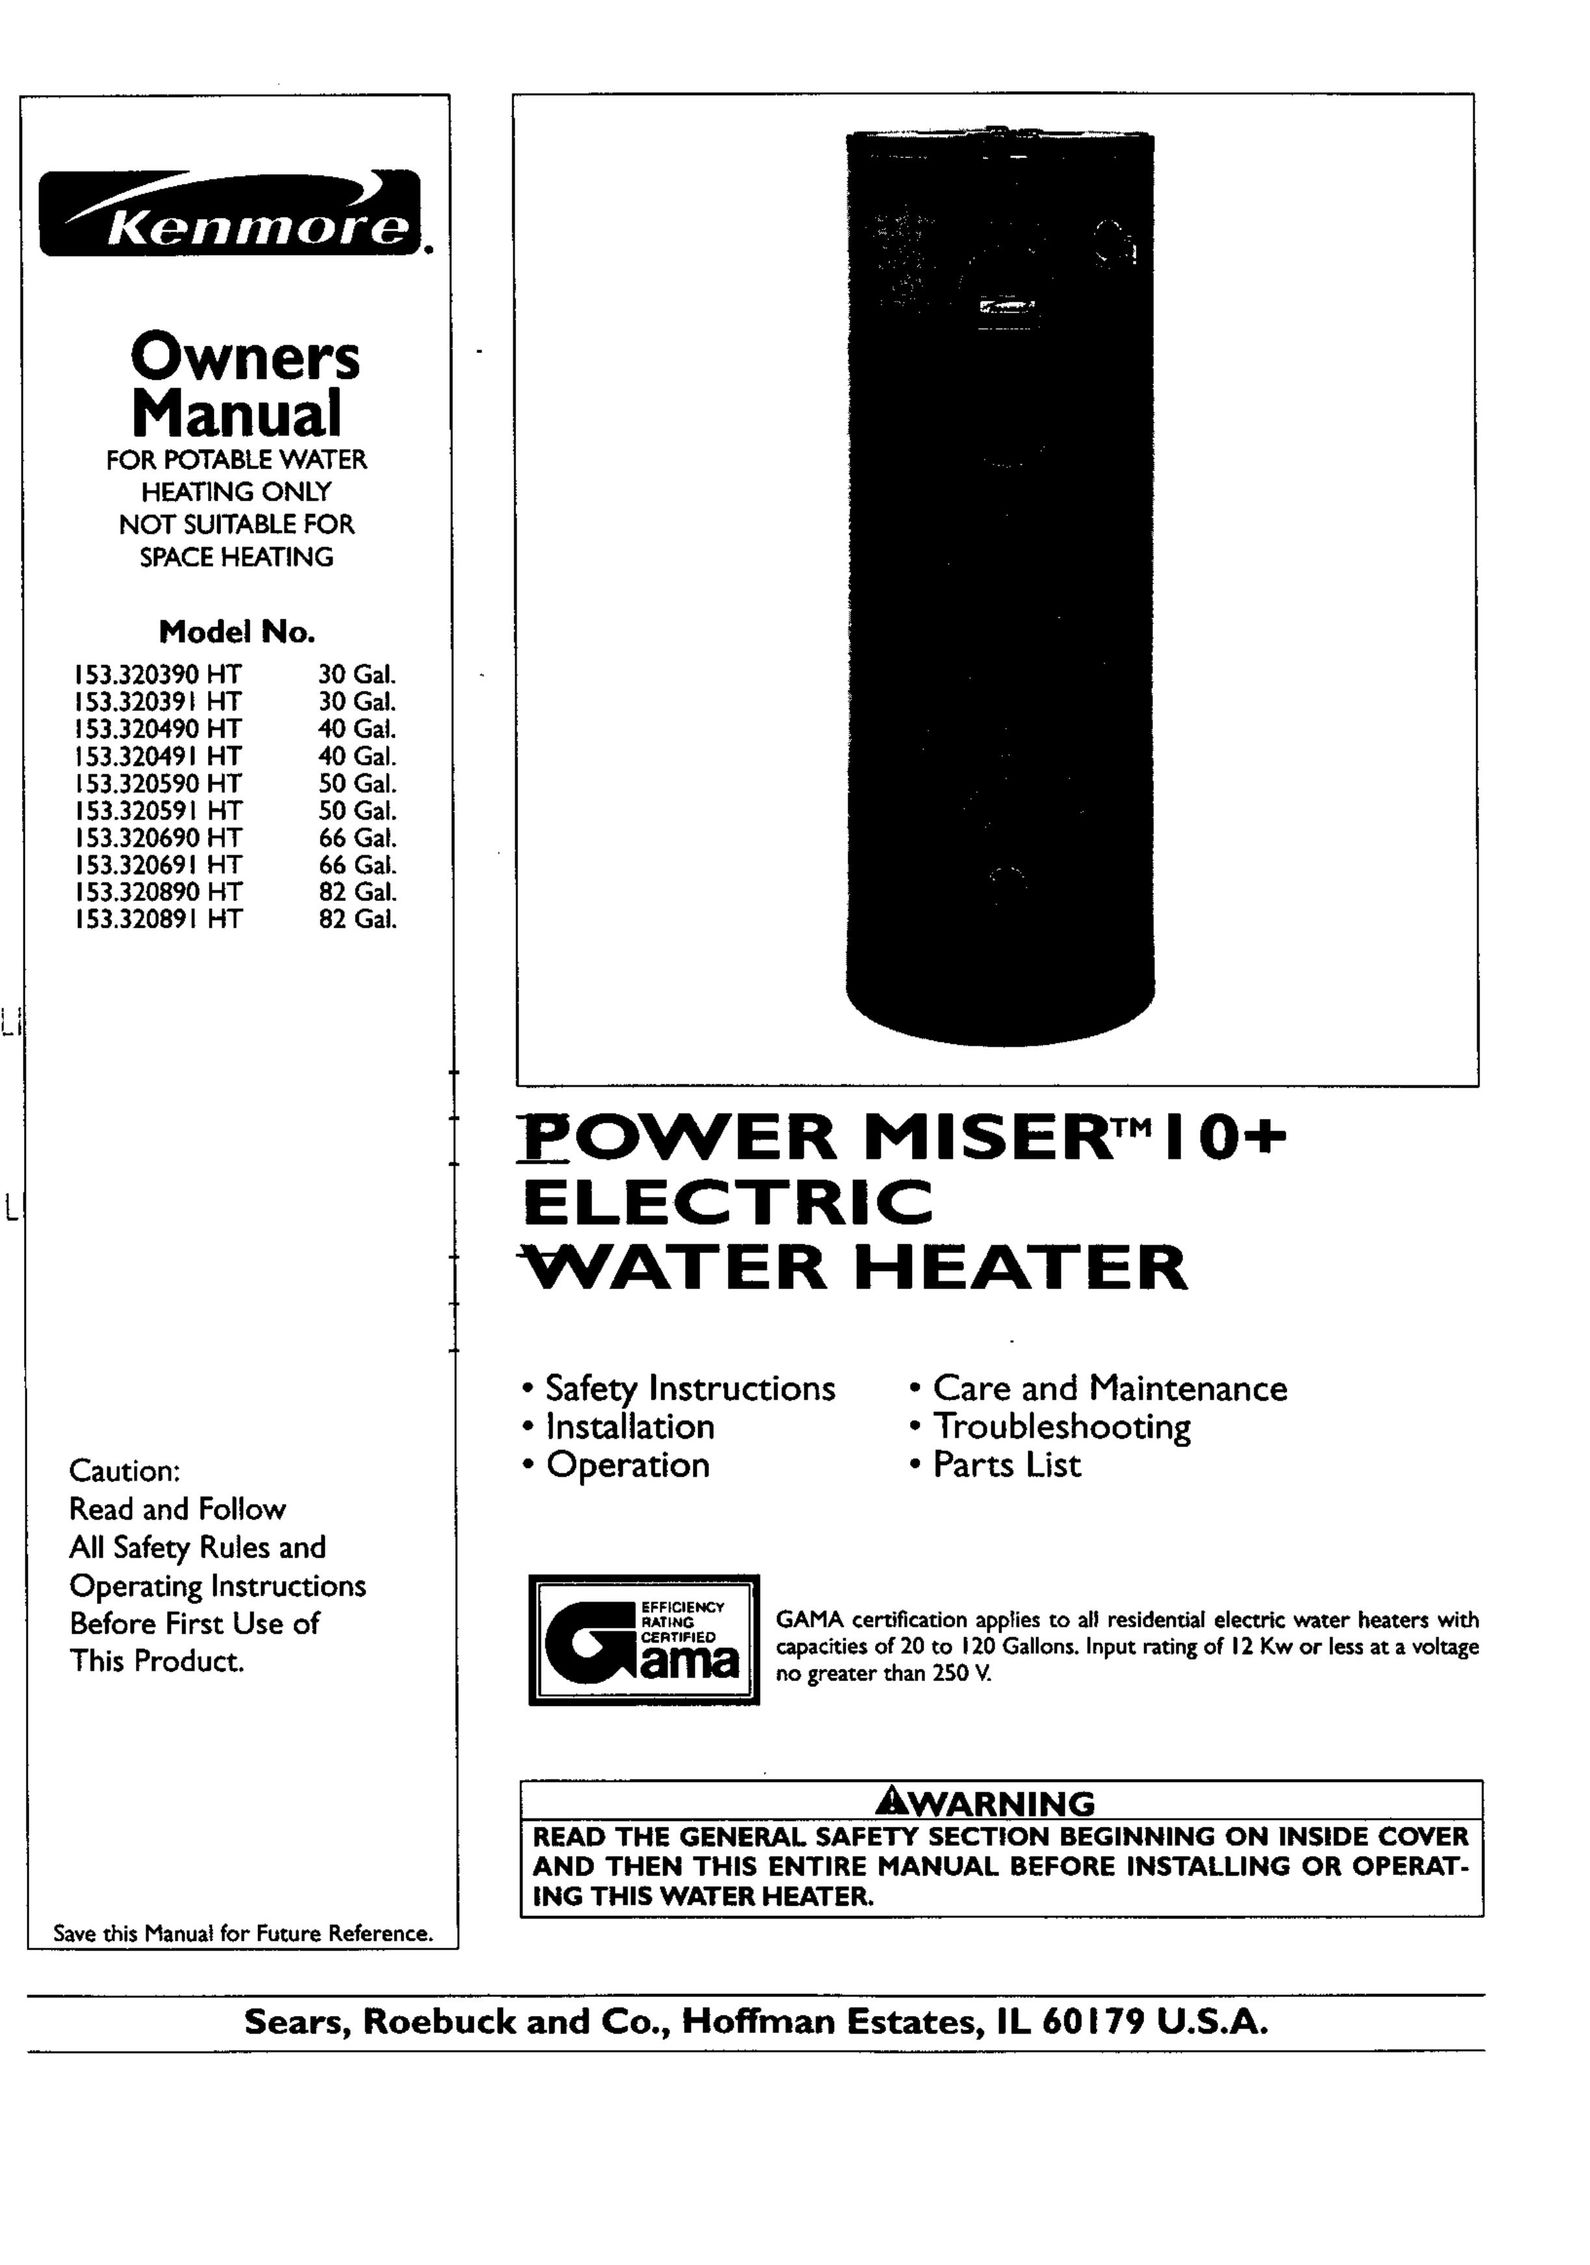 Kenmore 153.320491 HT 40 GAL Water Heater User Manual